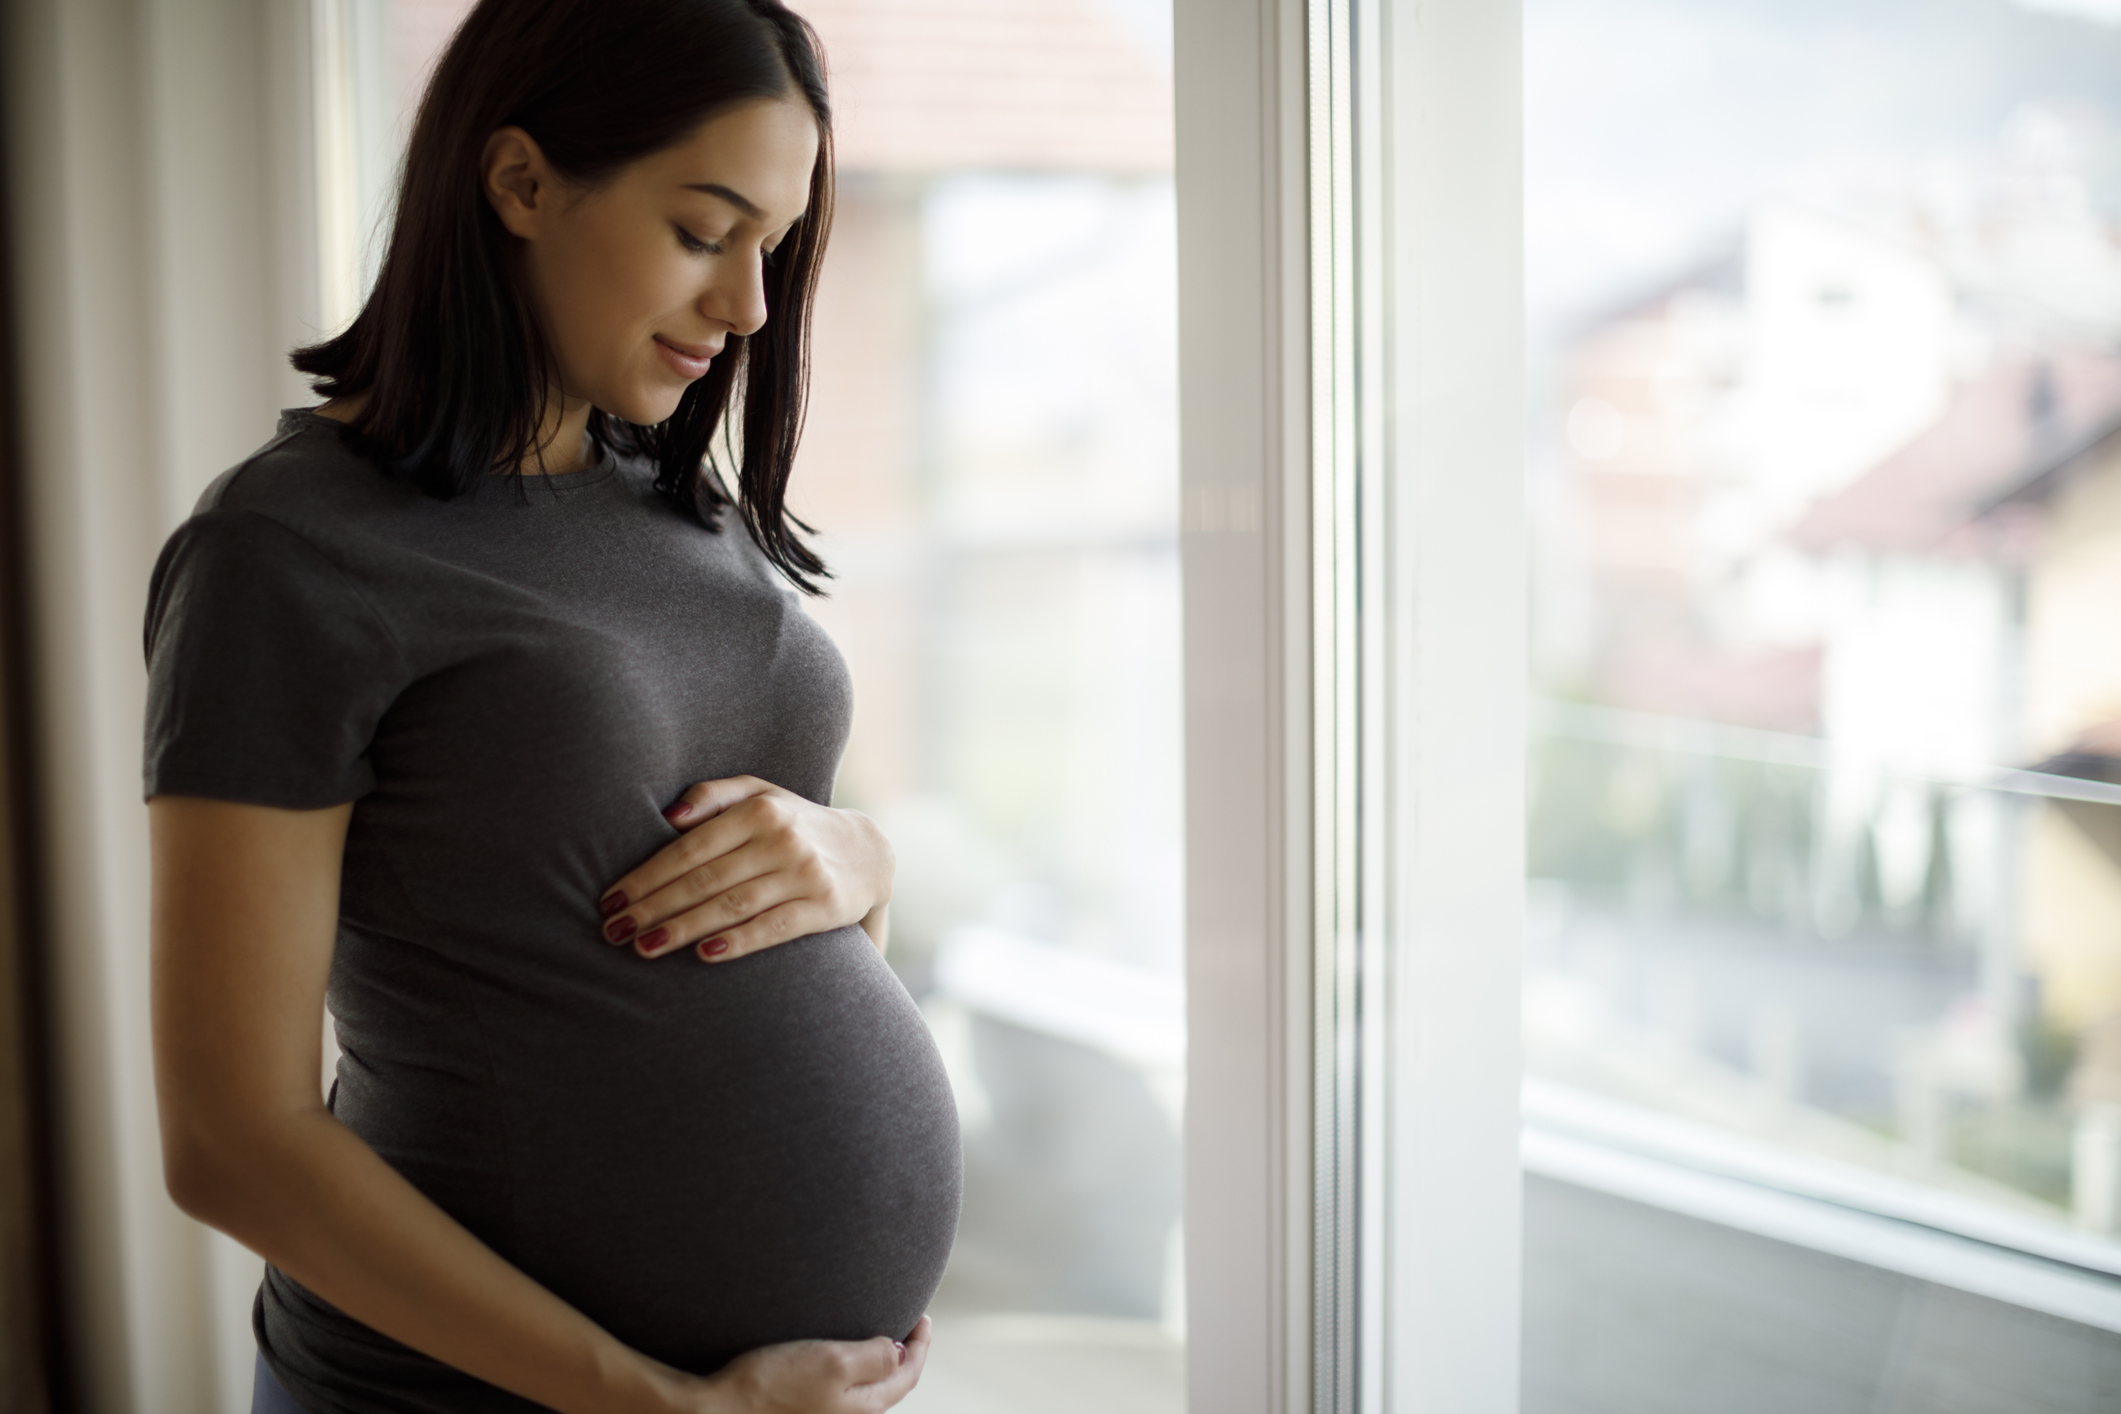 Tips for pregnant women to avoid coronavirus.